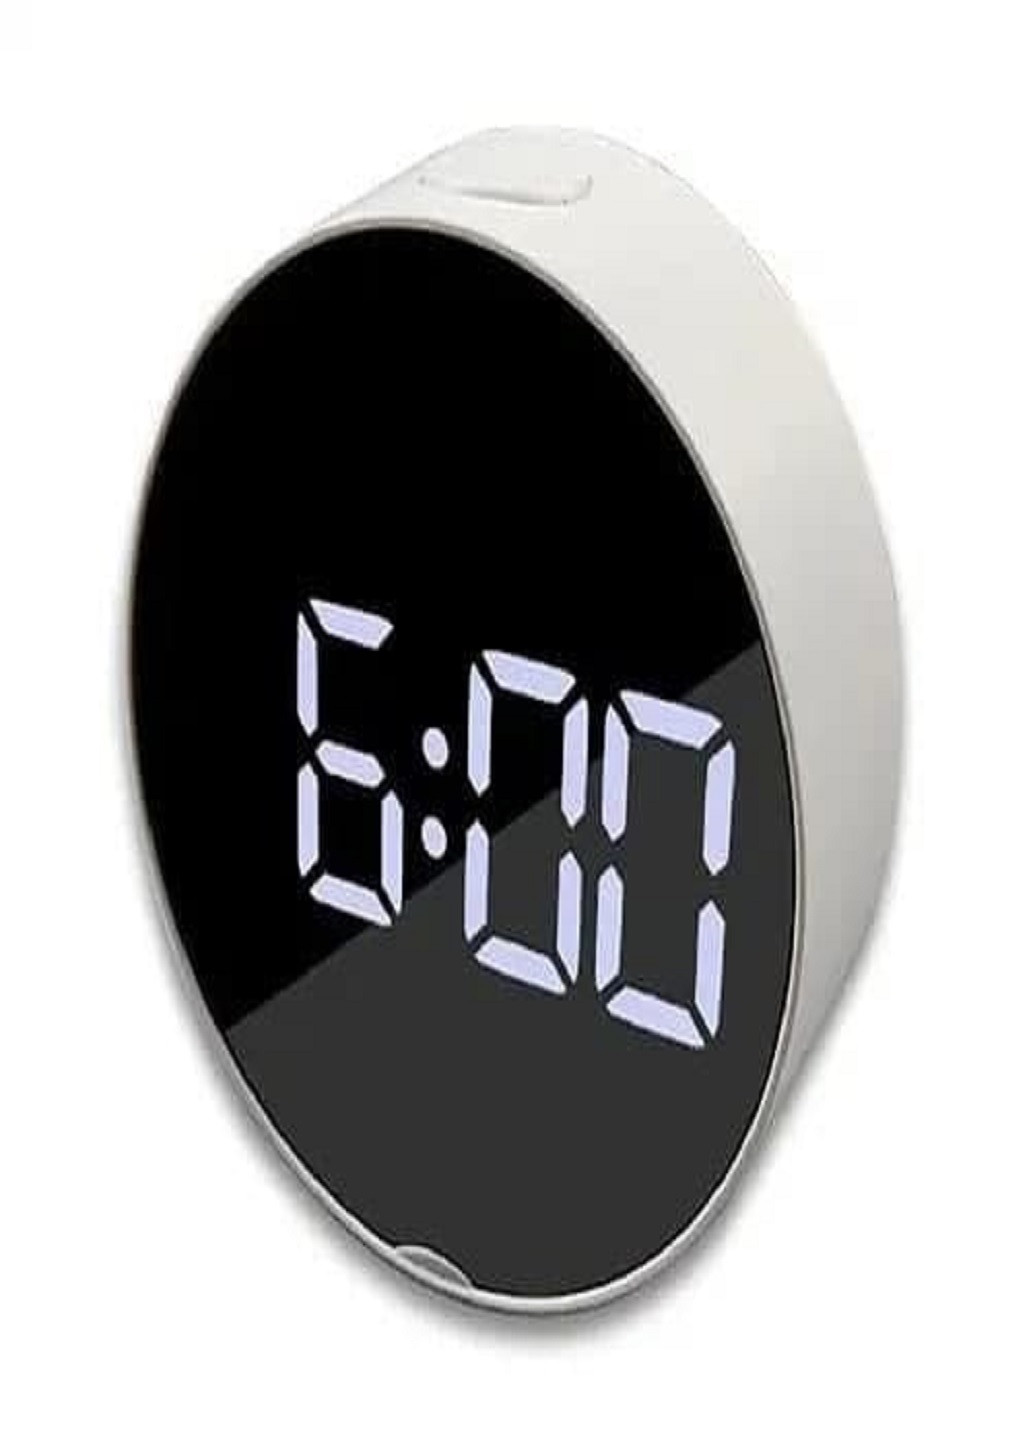 Настільний електронний годинник з підсвіткою і живленням від мережі 220В VST-6505 Білий корпус Біла підсвітка VTech (263360256)